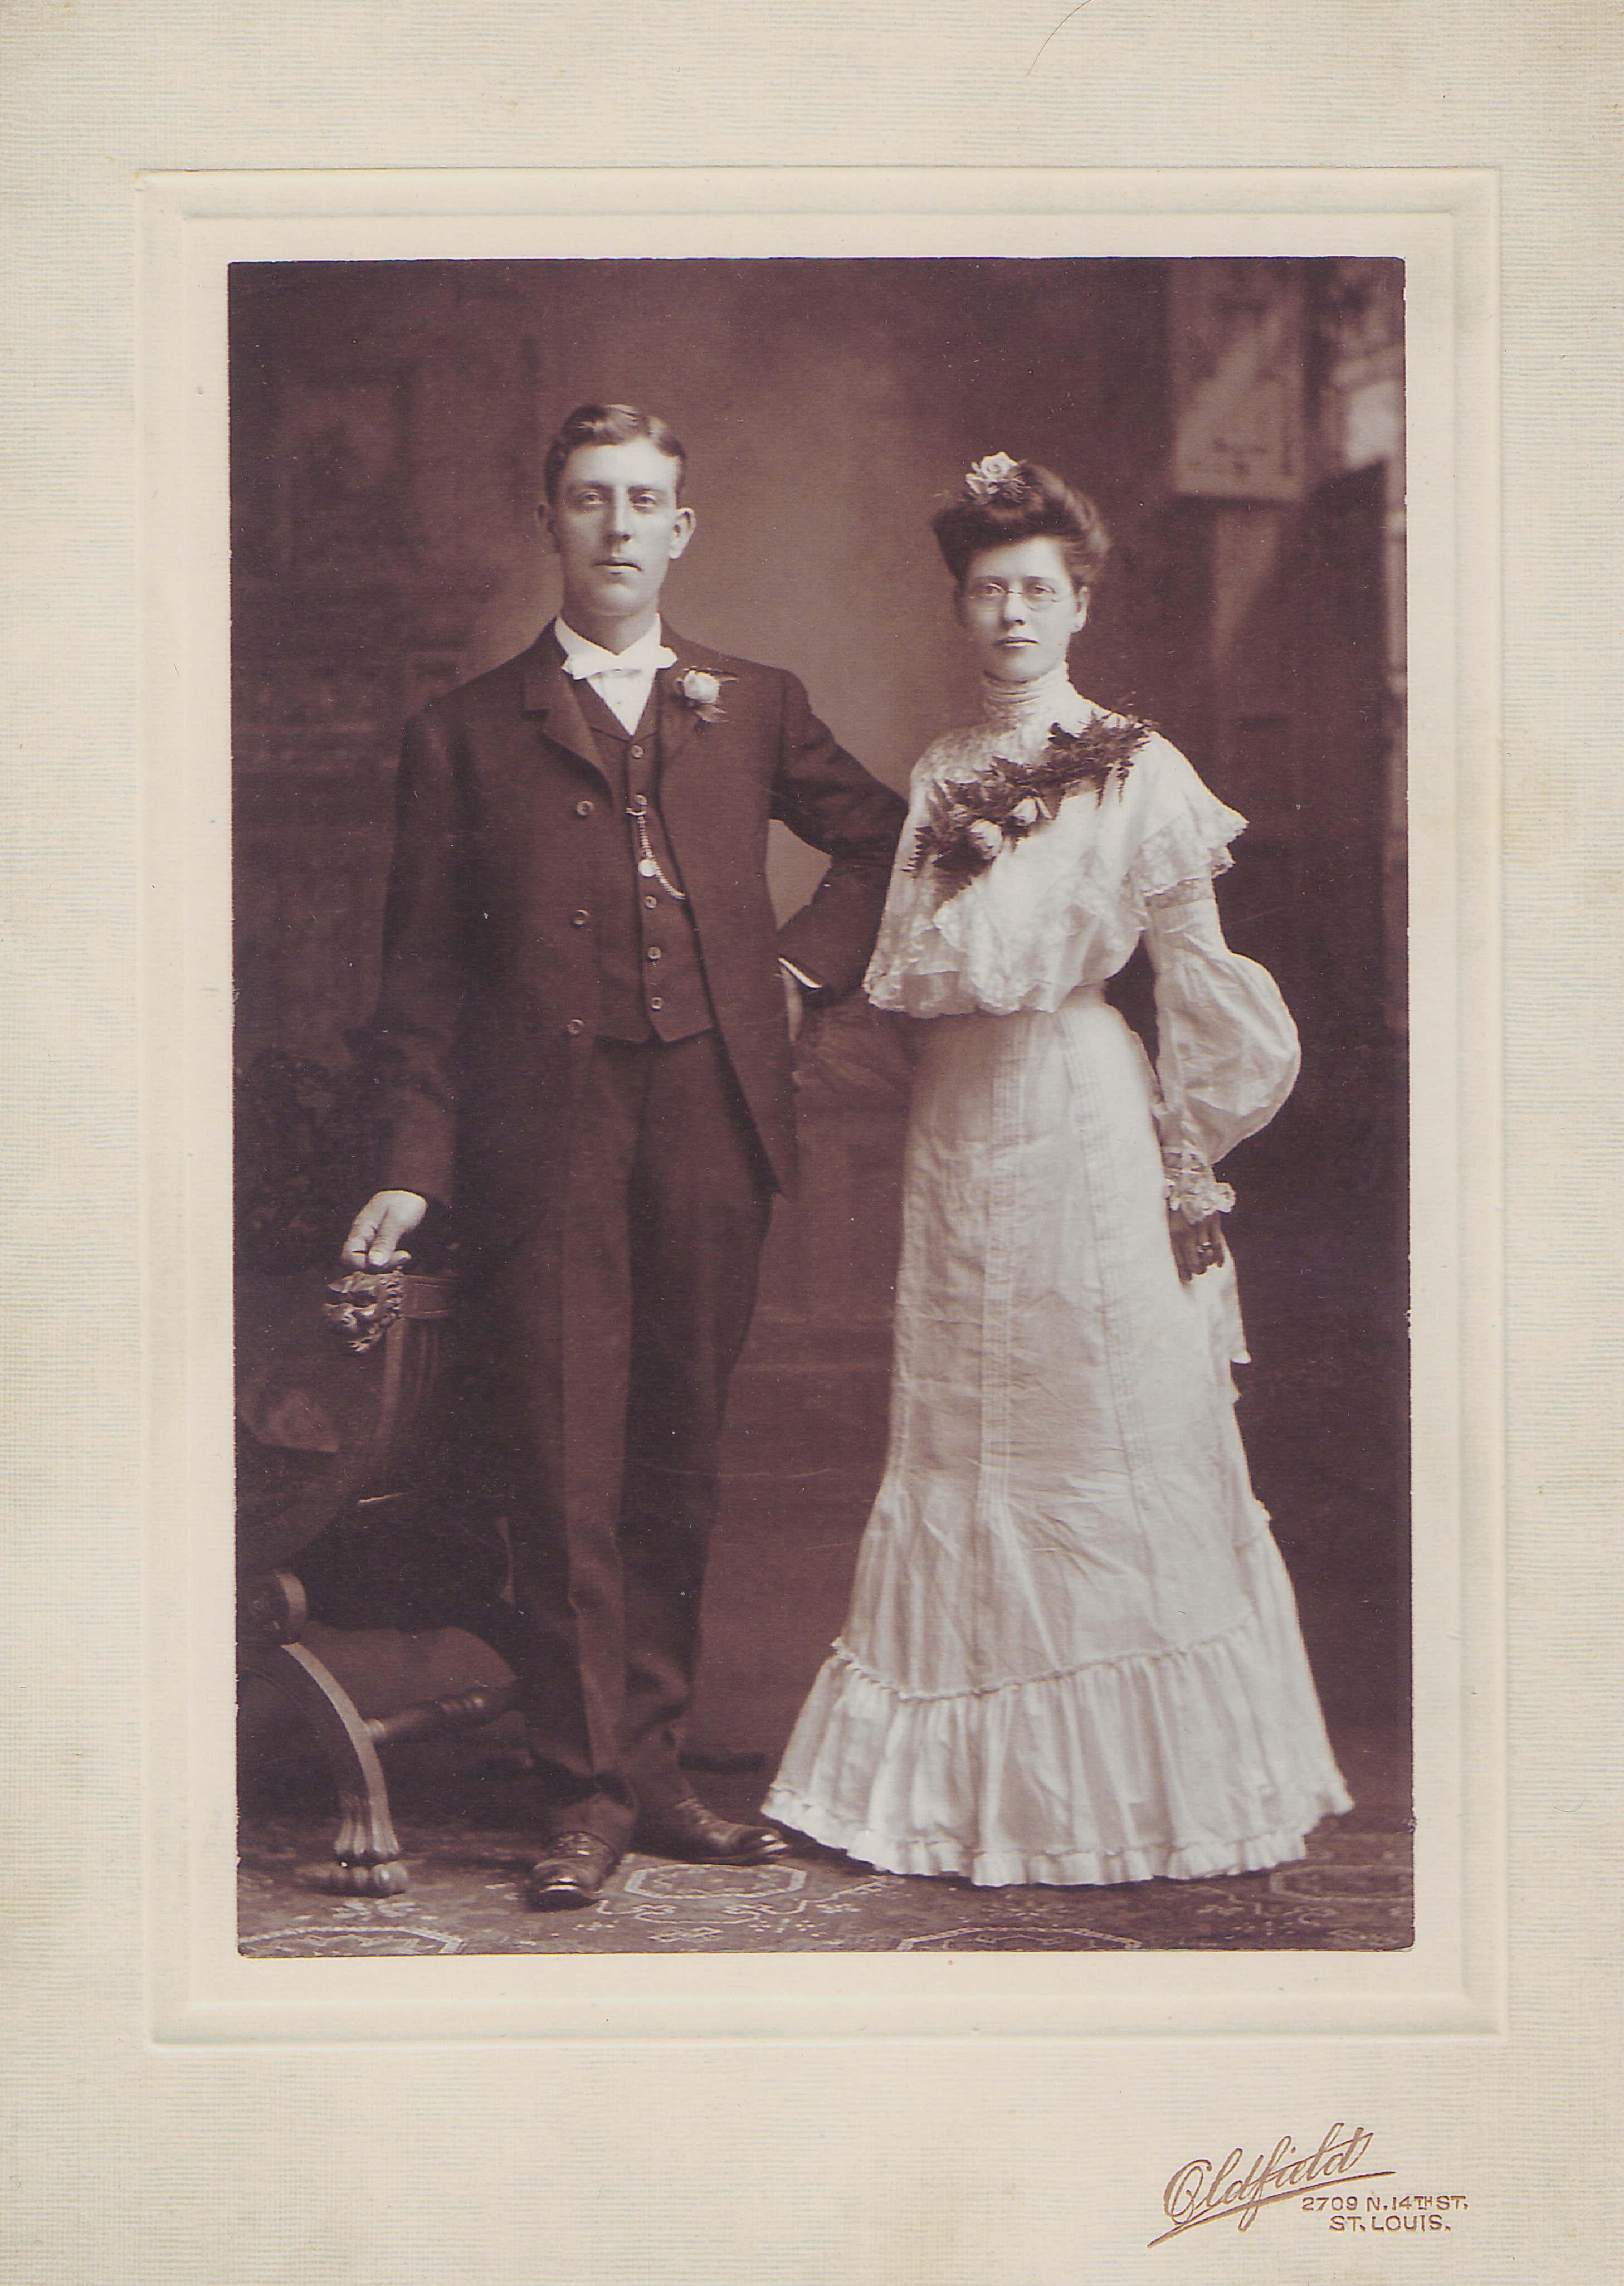 Gus and Lizzie (Voepel) Schubert, 1904